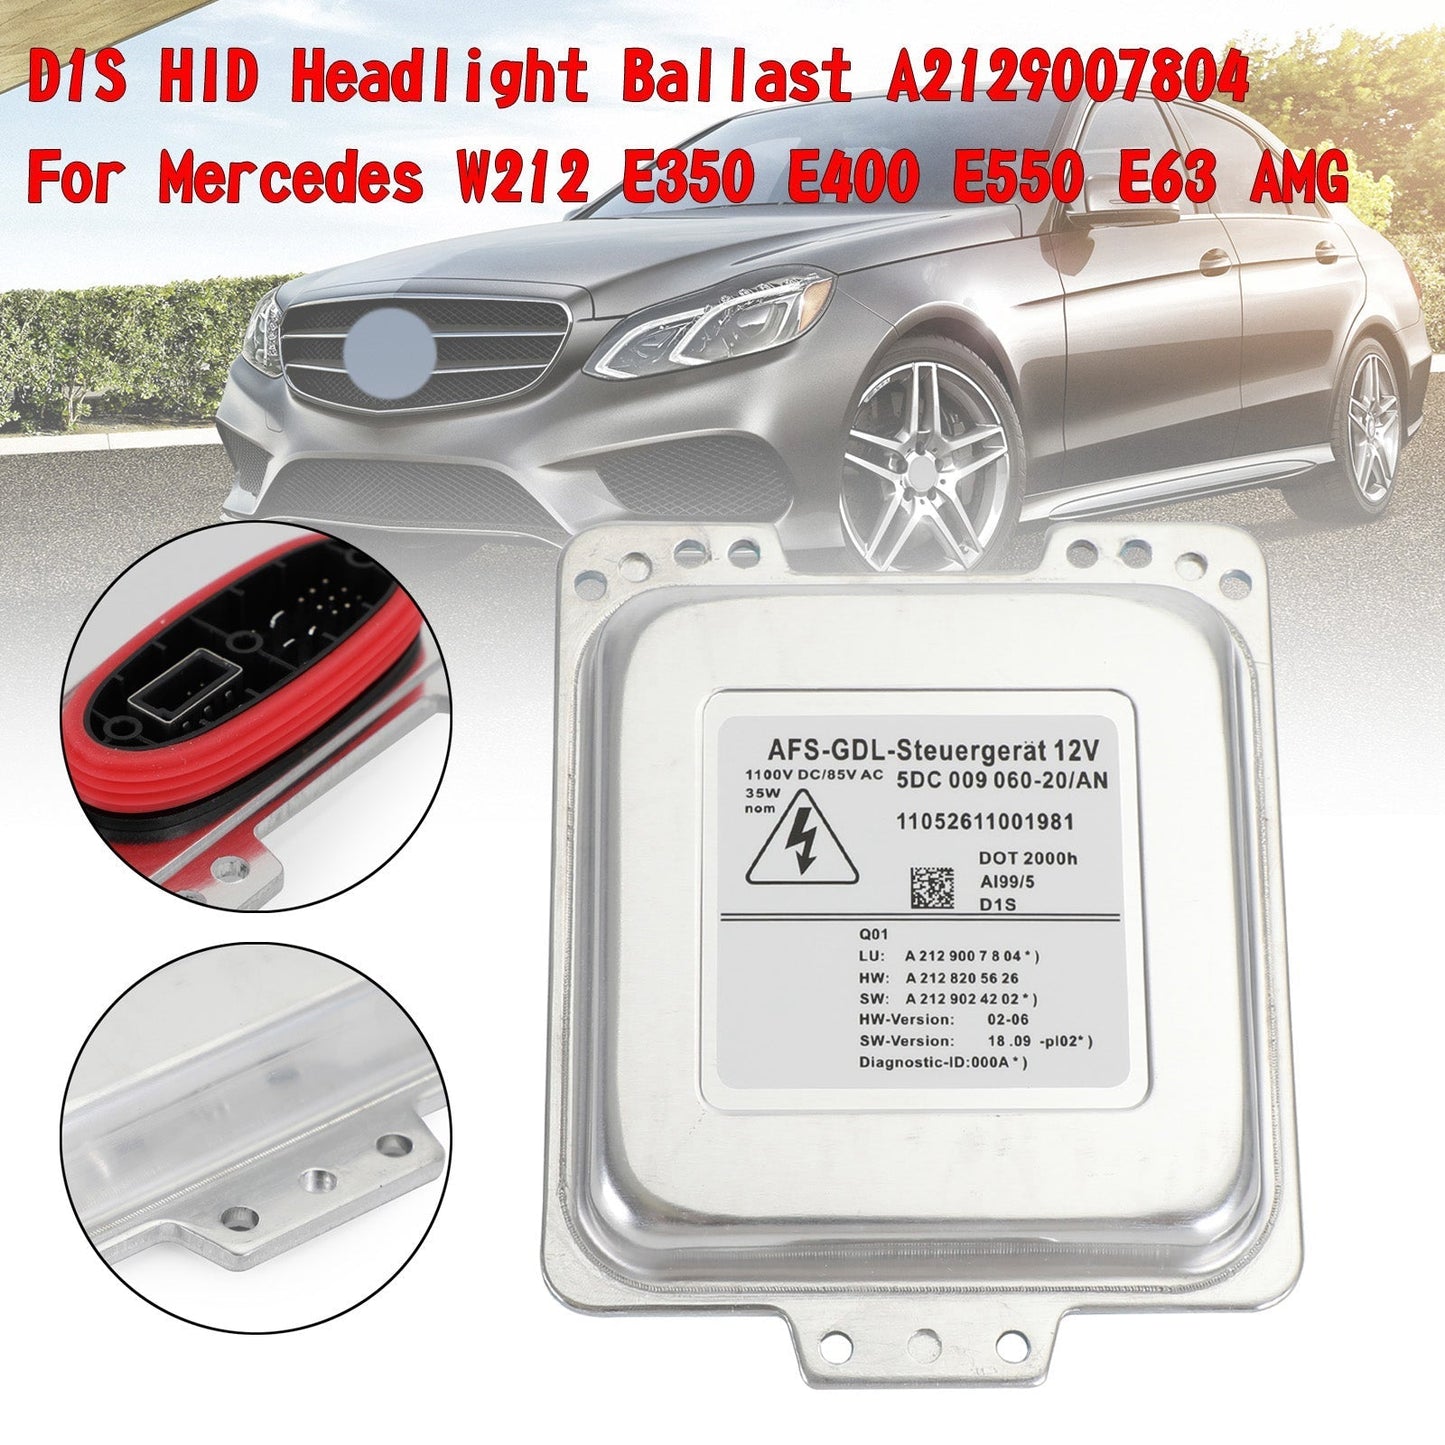 2009-2013 Mercedes Benz E Class S212 Estate D1S HID Headlight Ballast A2129007804 A2128205626